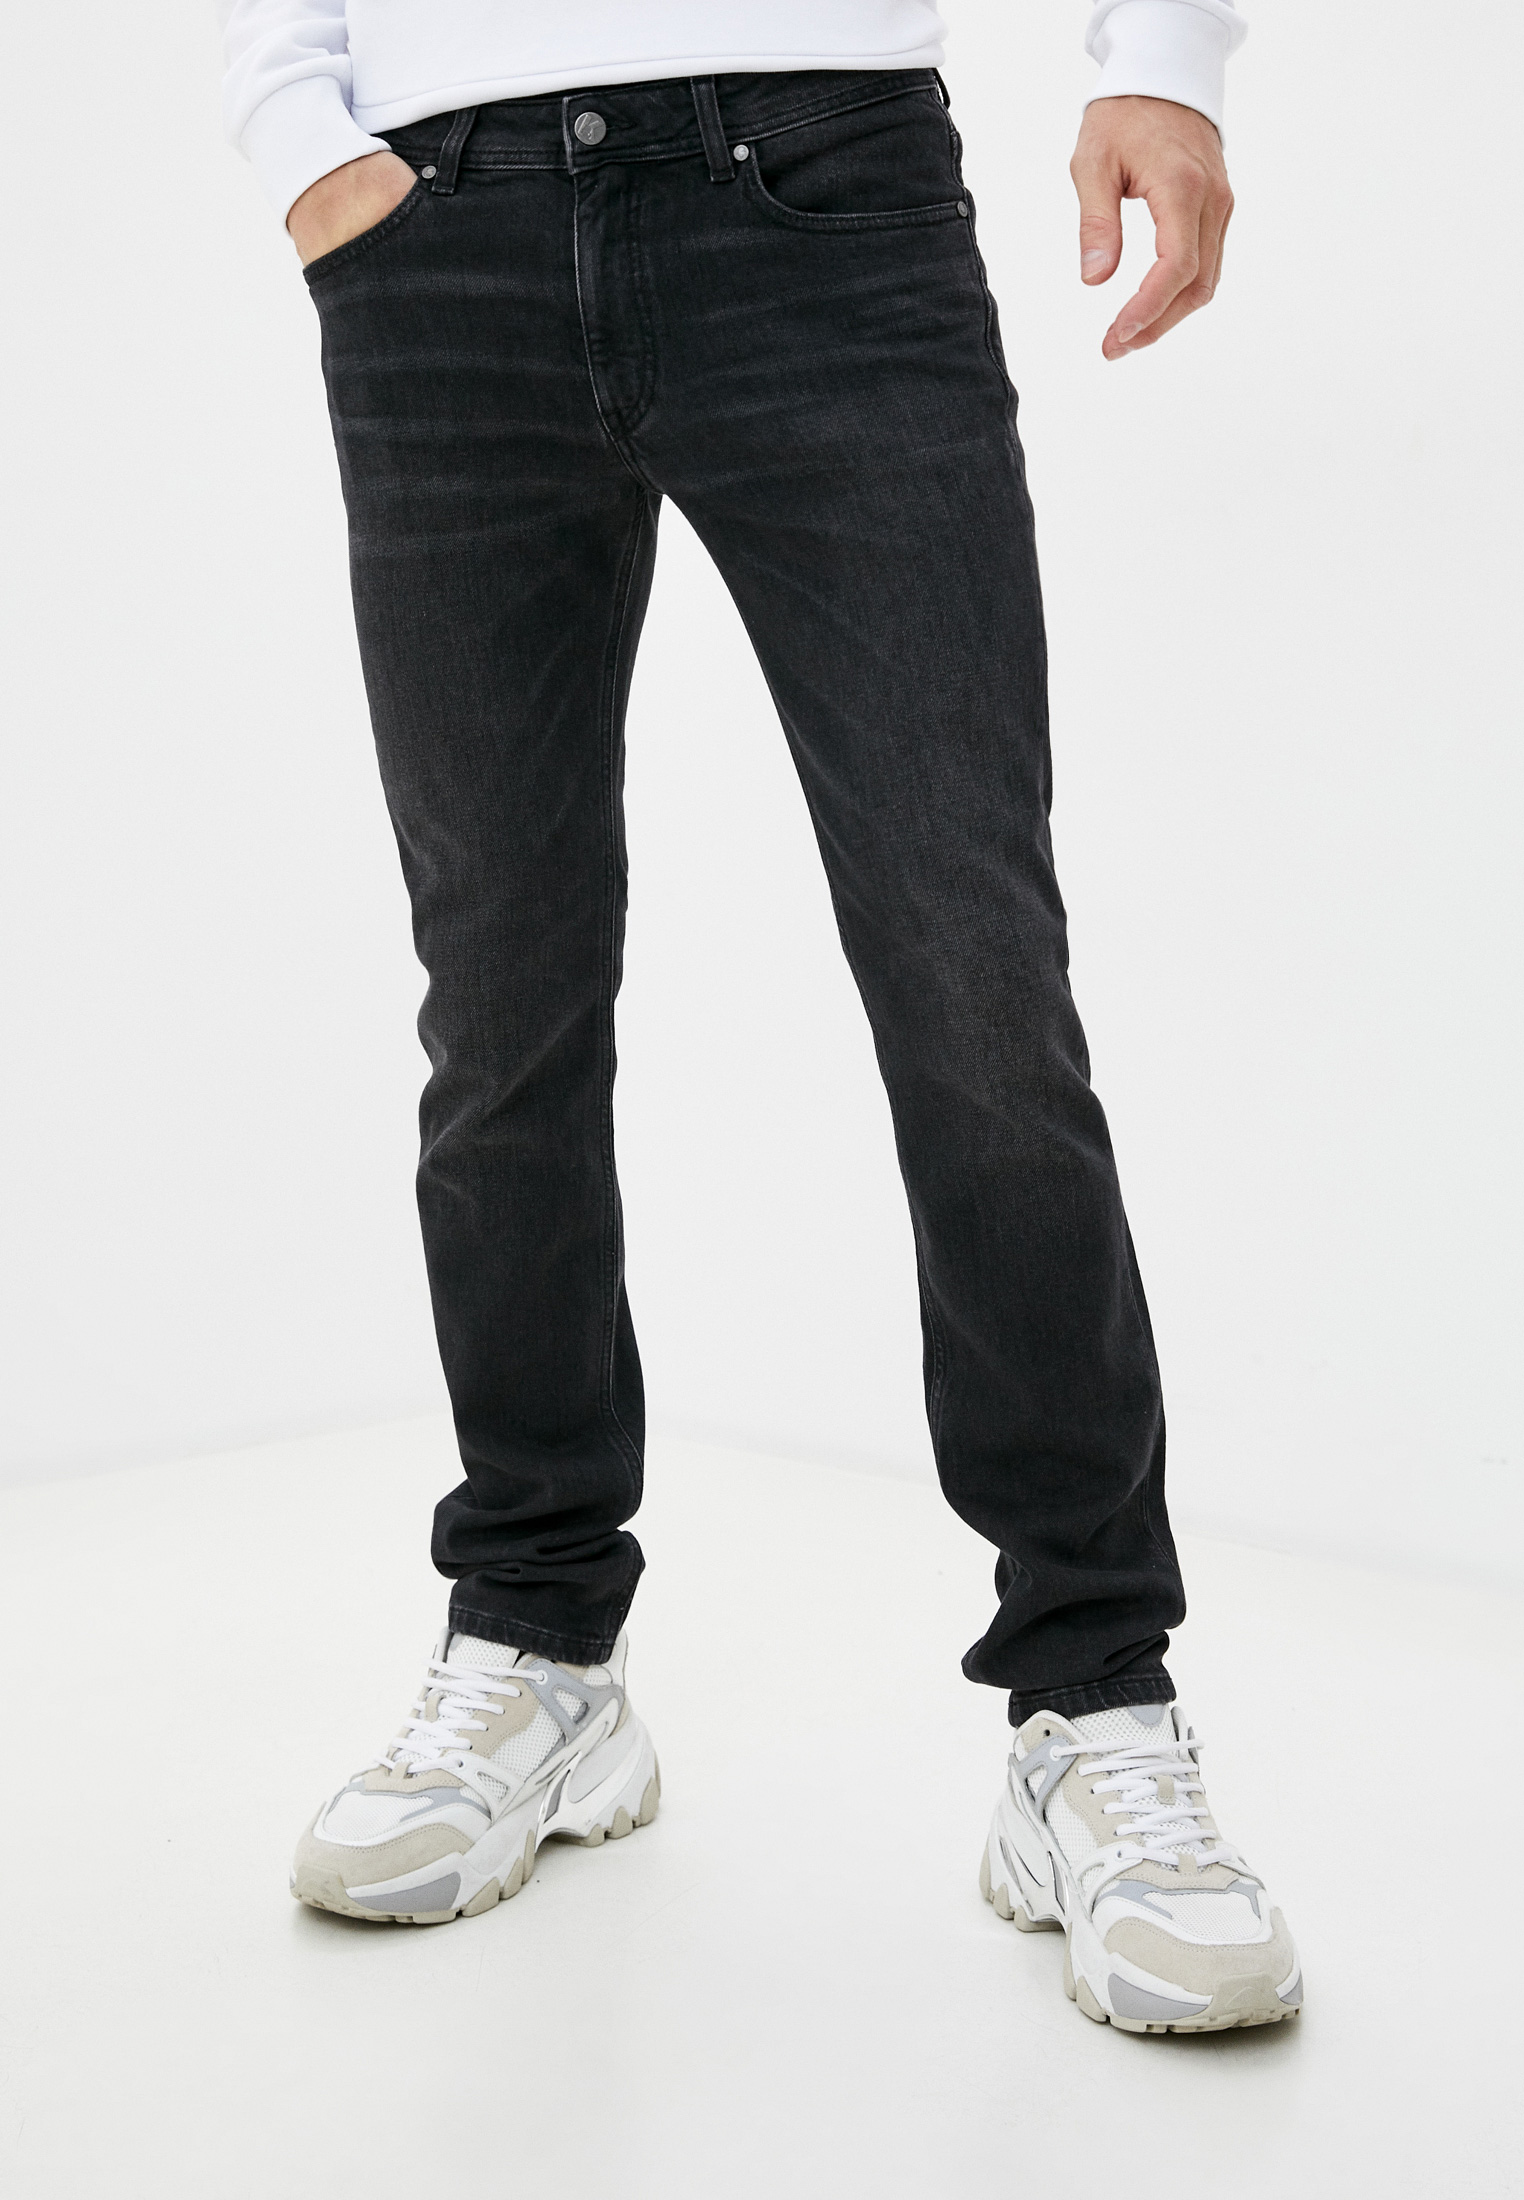 Мужские прямые джинсы Karl Lagerfeld (Карл Лагерфельд) 265840-500899: изображение 1